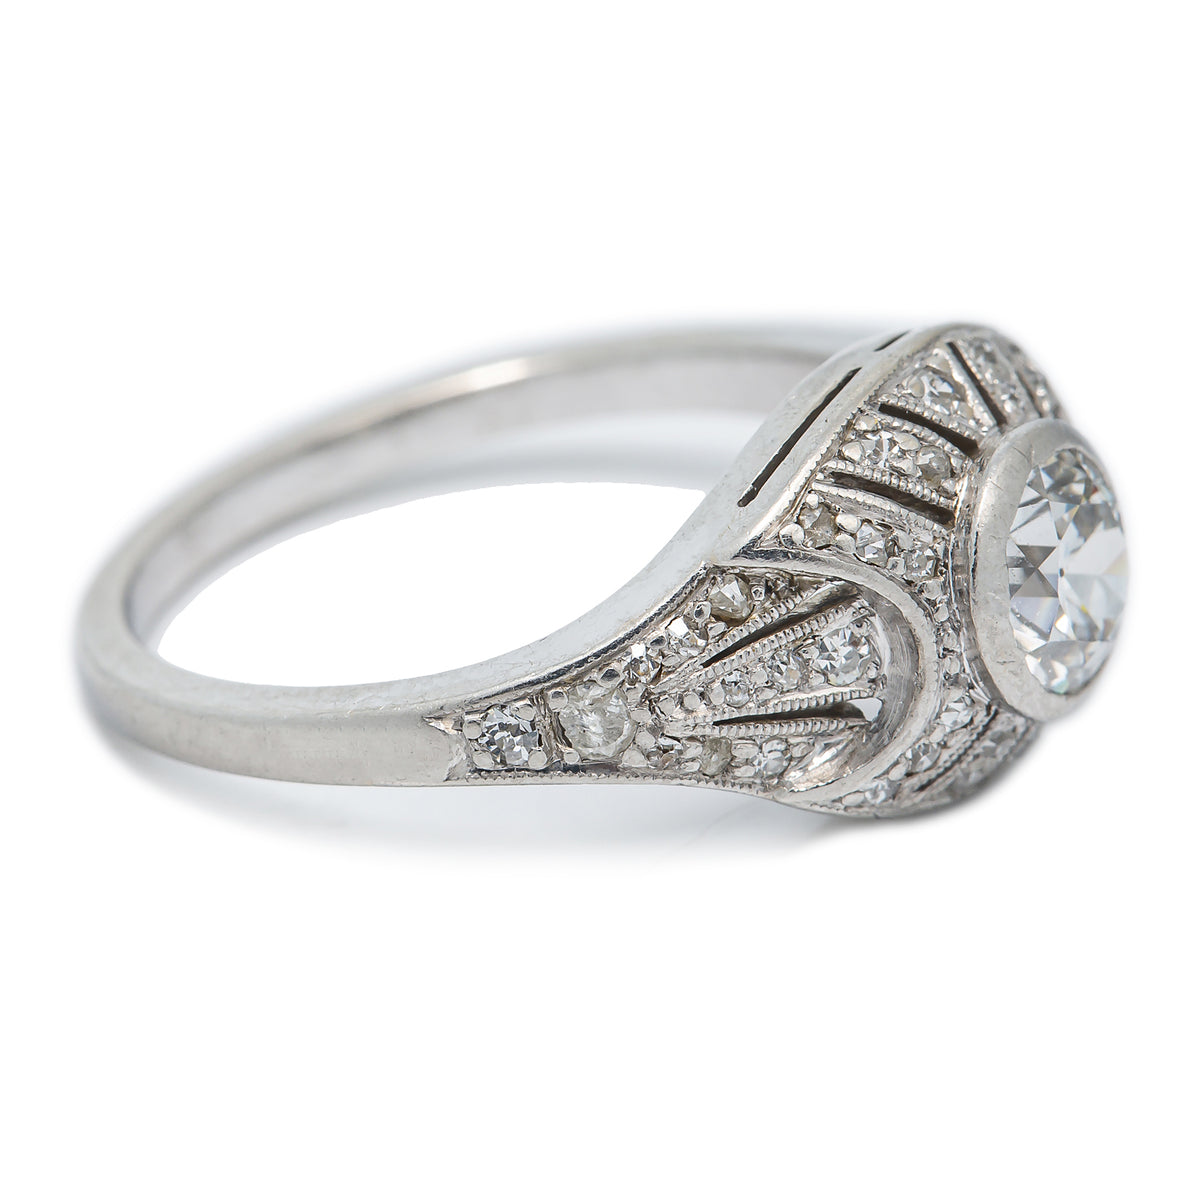 Platinum Antique Engagement Ring 0.55 Ct European Cut E Color VVS1 4.8grams